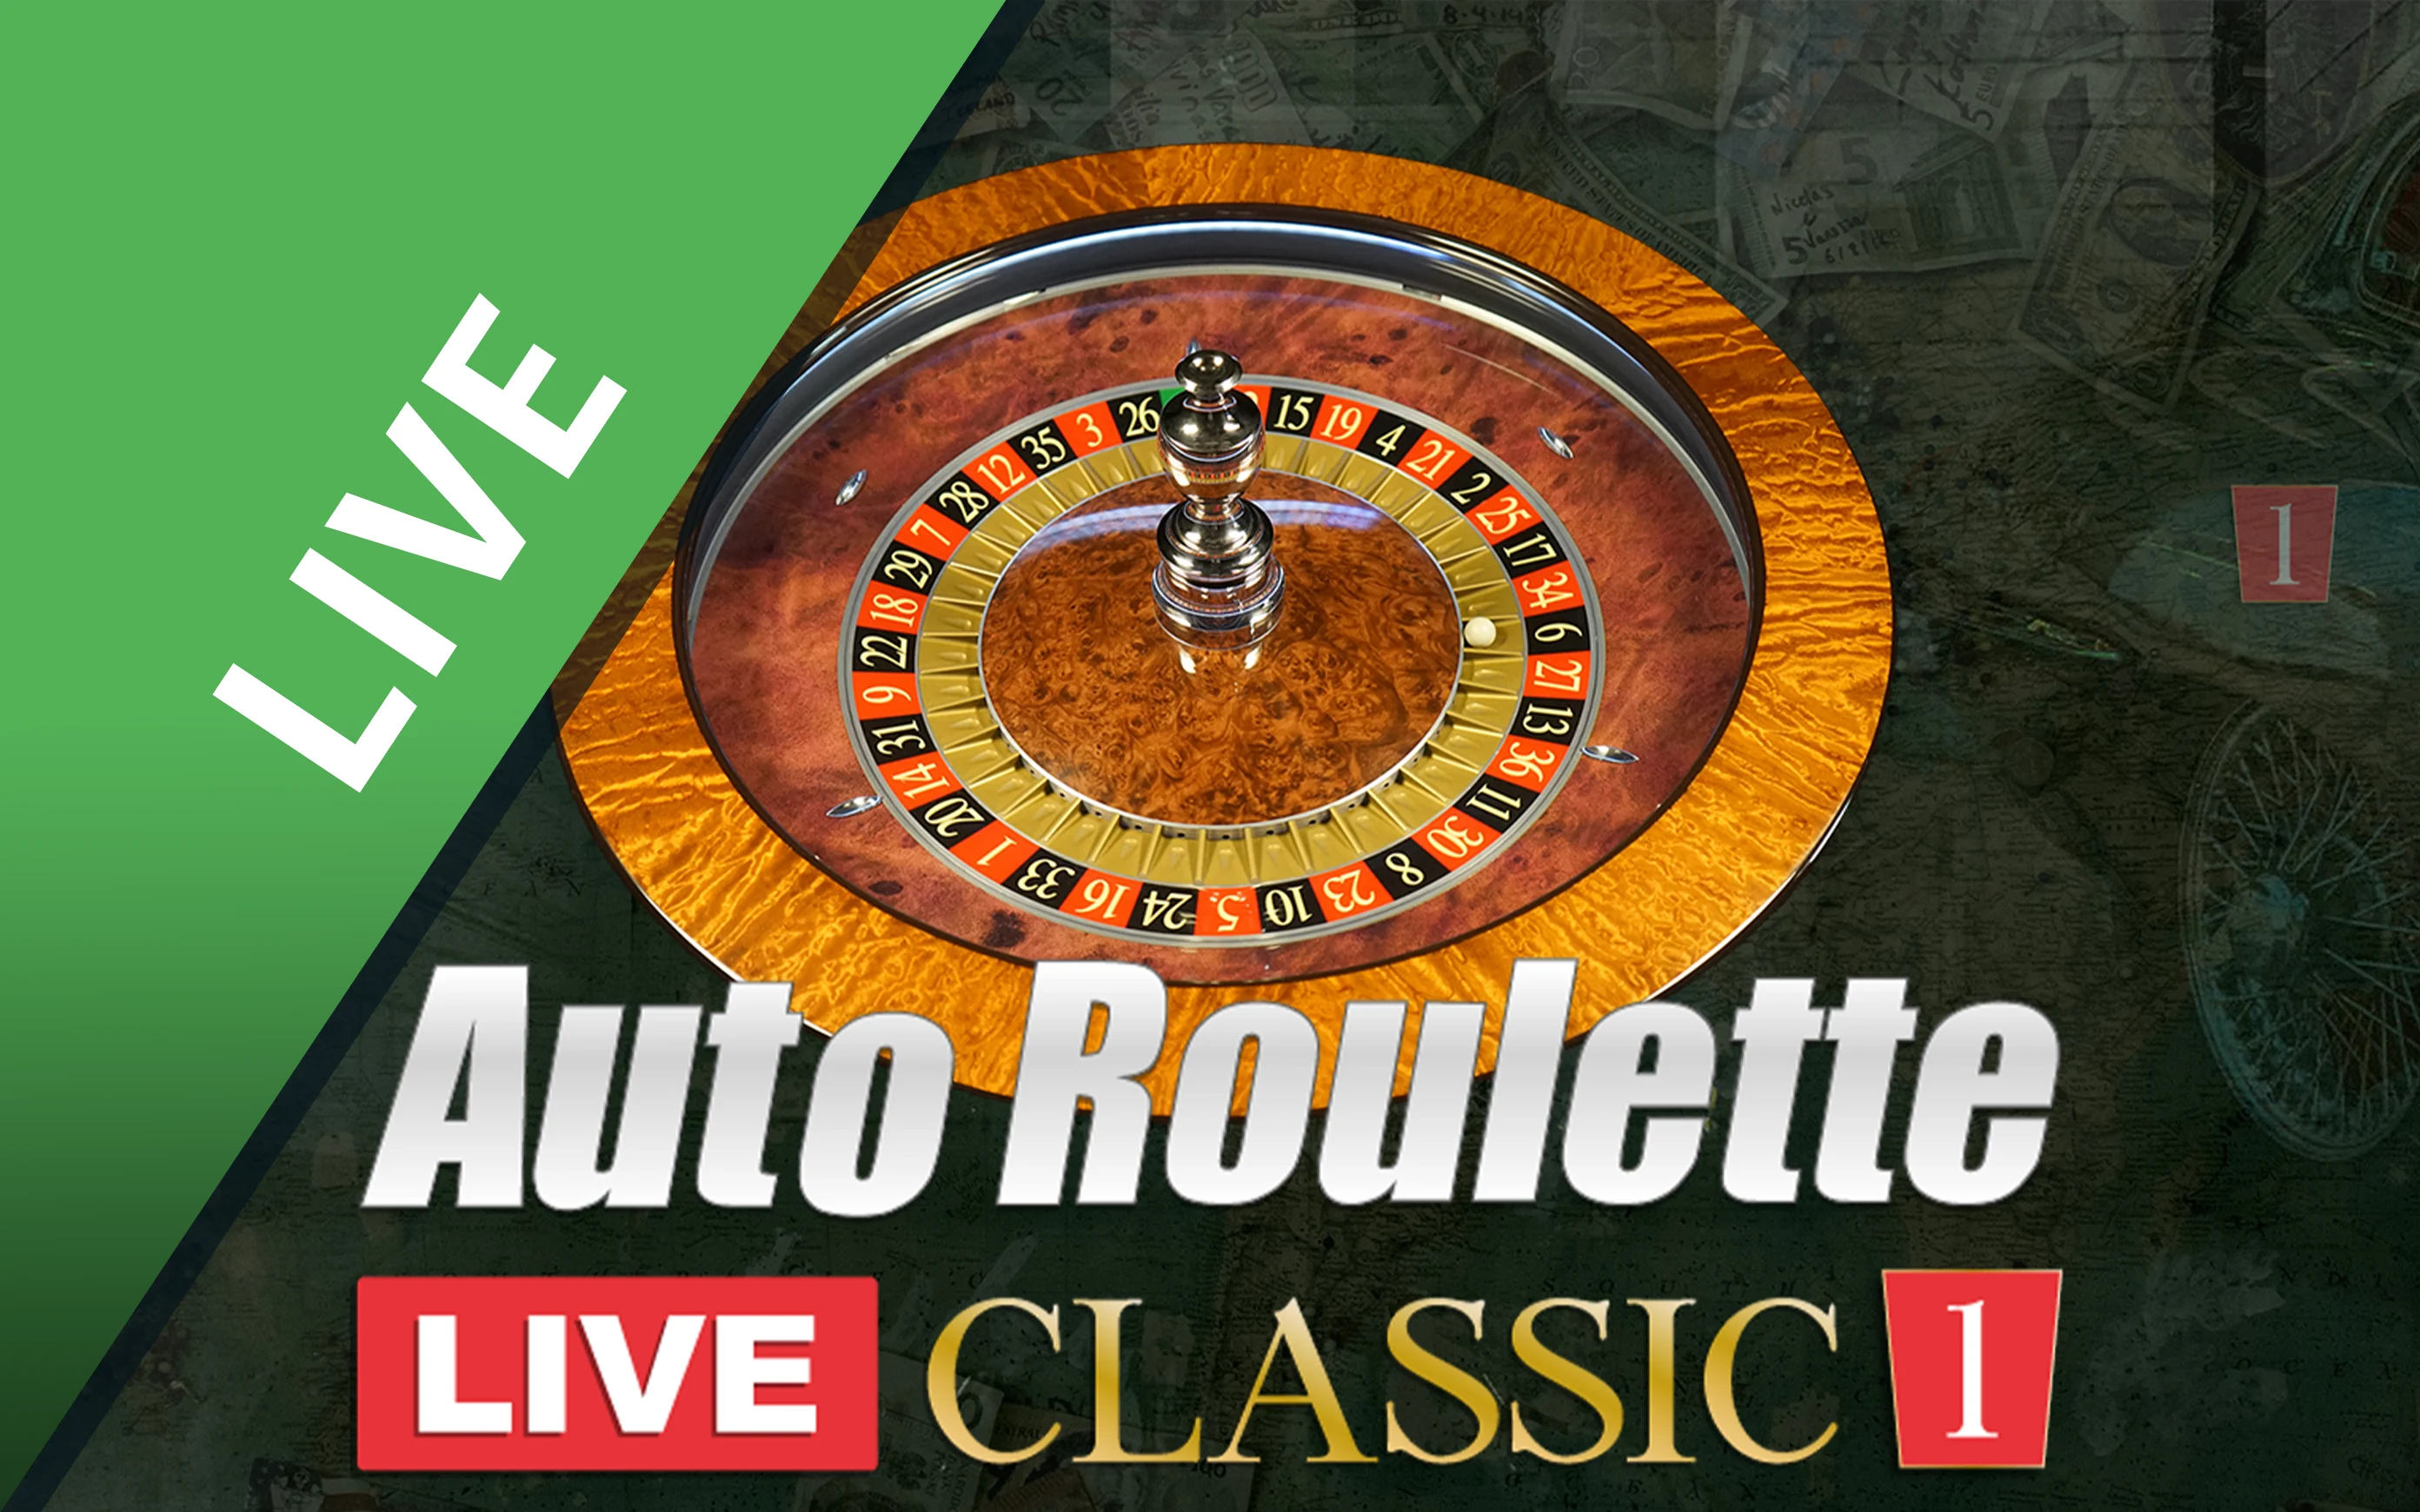 Chơi Classic Roulette 1 trên sòng bạc trực tuyến Starcasino.be